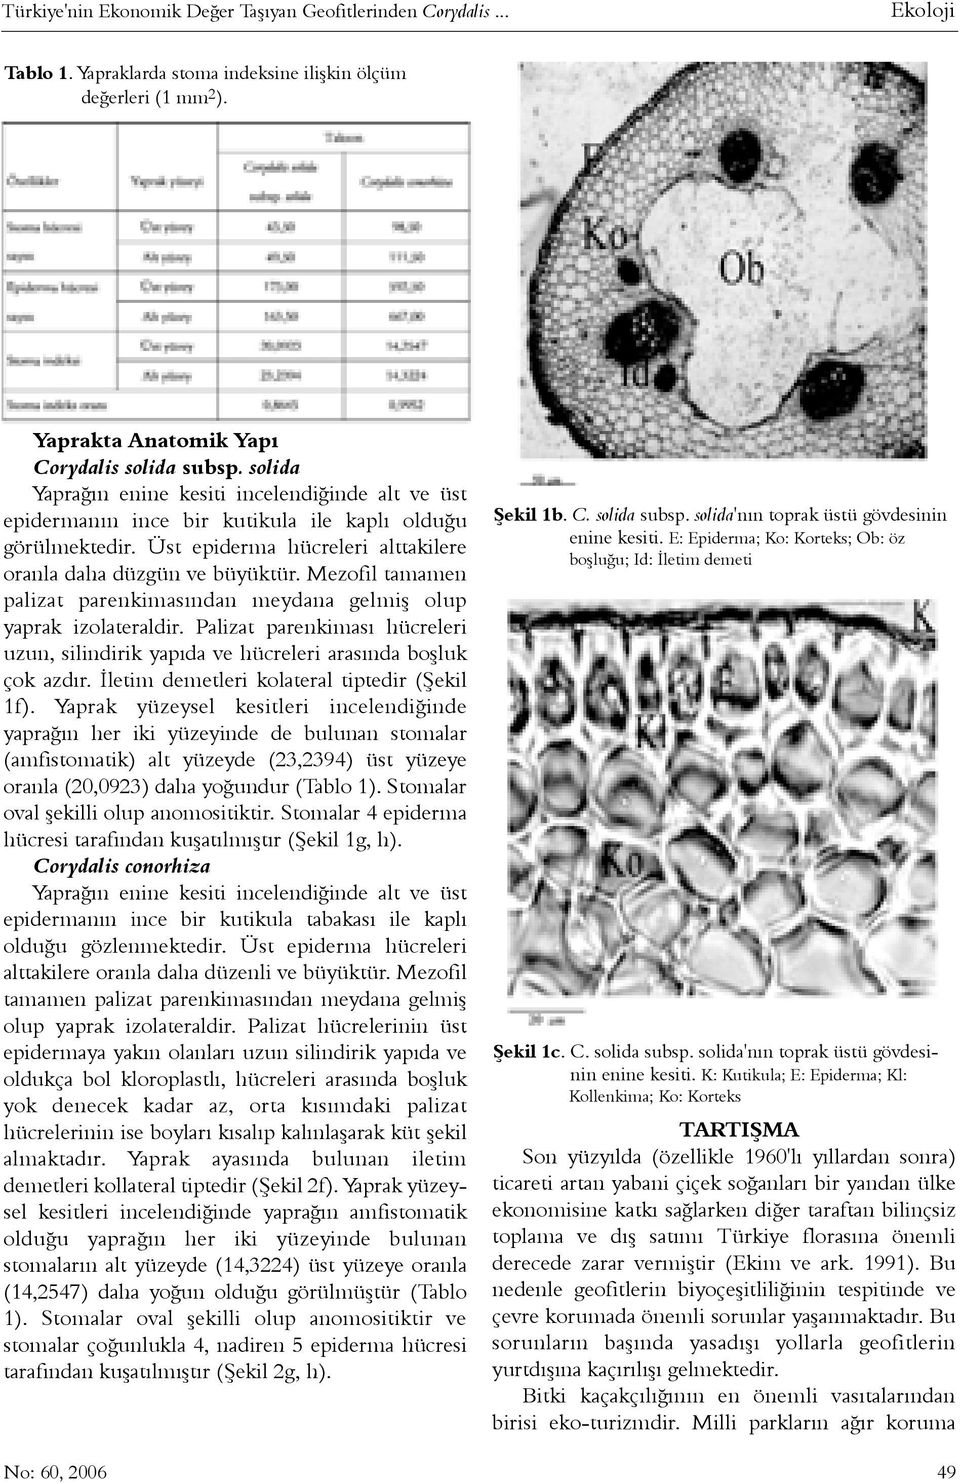 Mezofil tamamen palizat parenkimasýndan meydana gelmiþ olup yaprak izolateraldir. Palizat parenkimasý hücreleri uzun, silindirik yapýda ve hücreleri arasýnda boþluk çok azdýr.